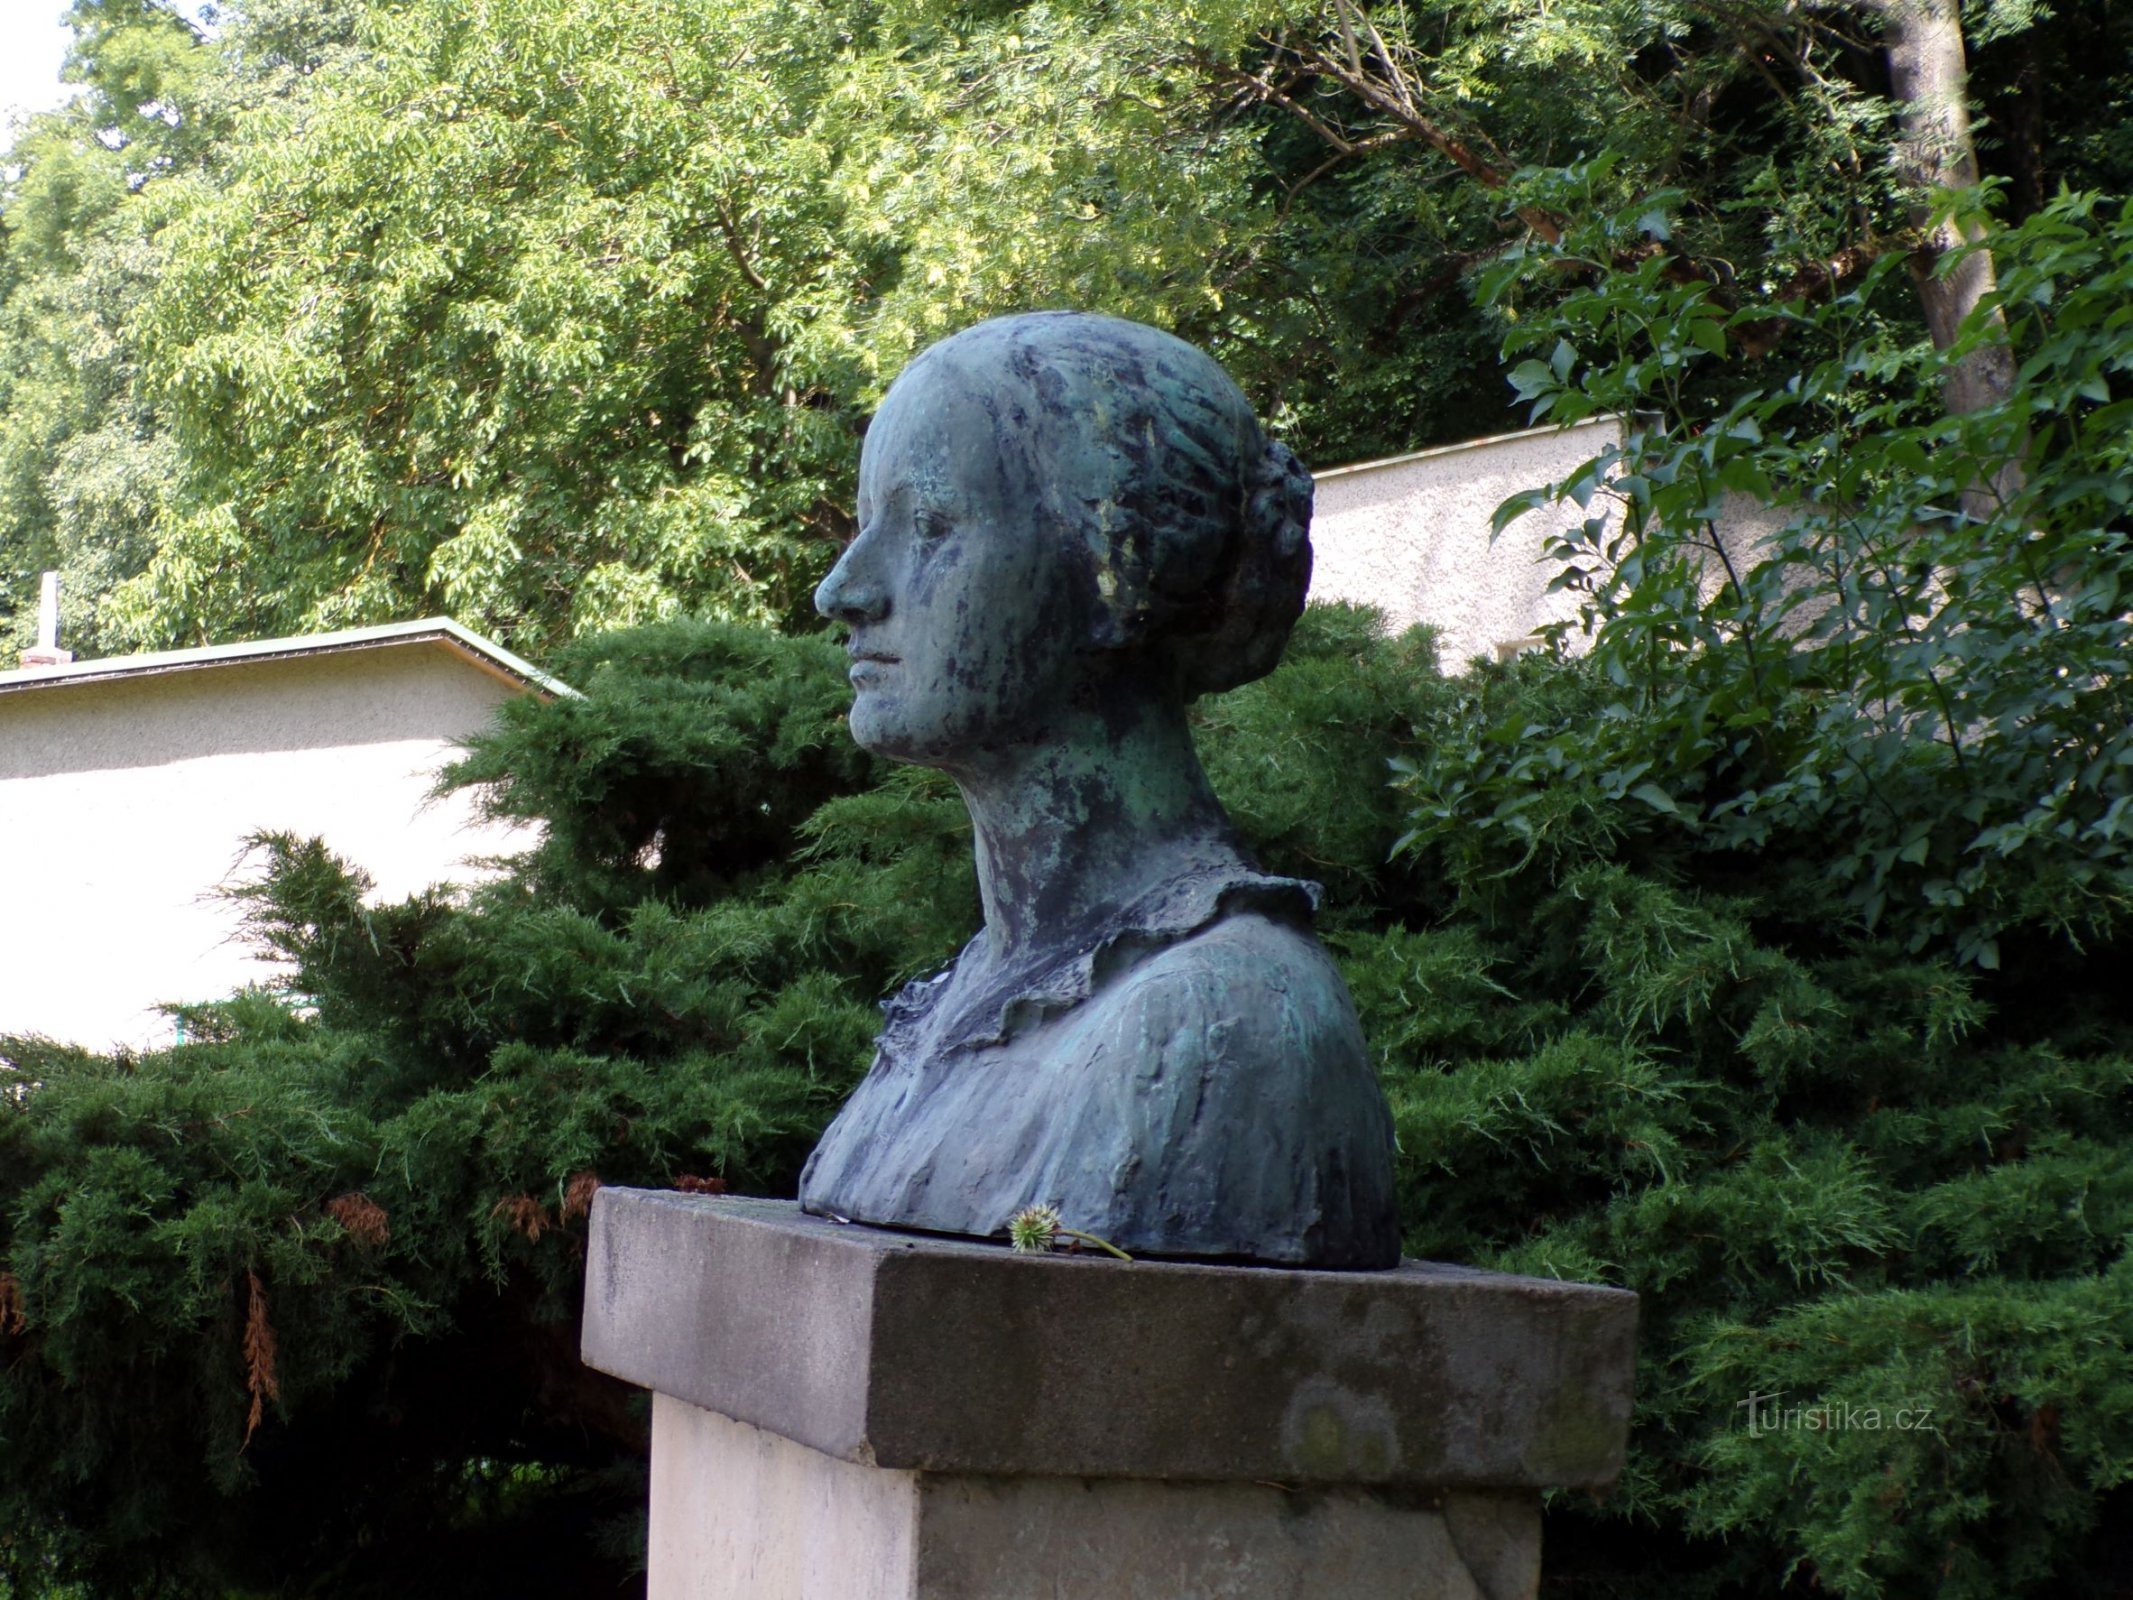 Busto de Božena Němcová (Chvalkovice, 13.7.2021)